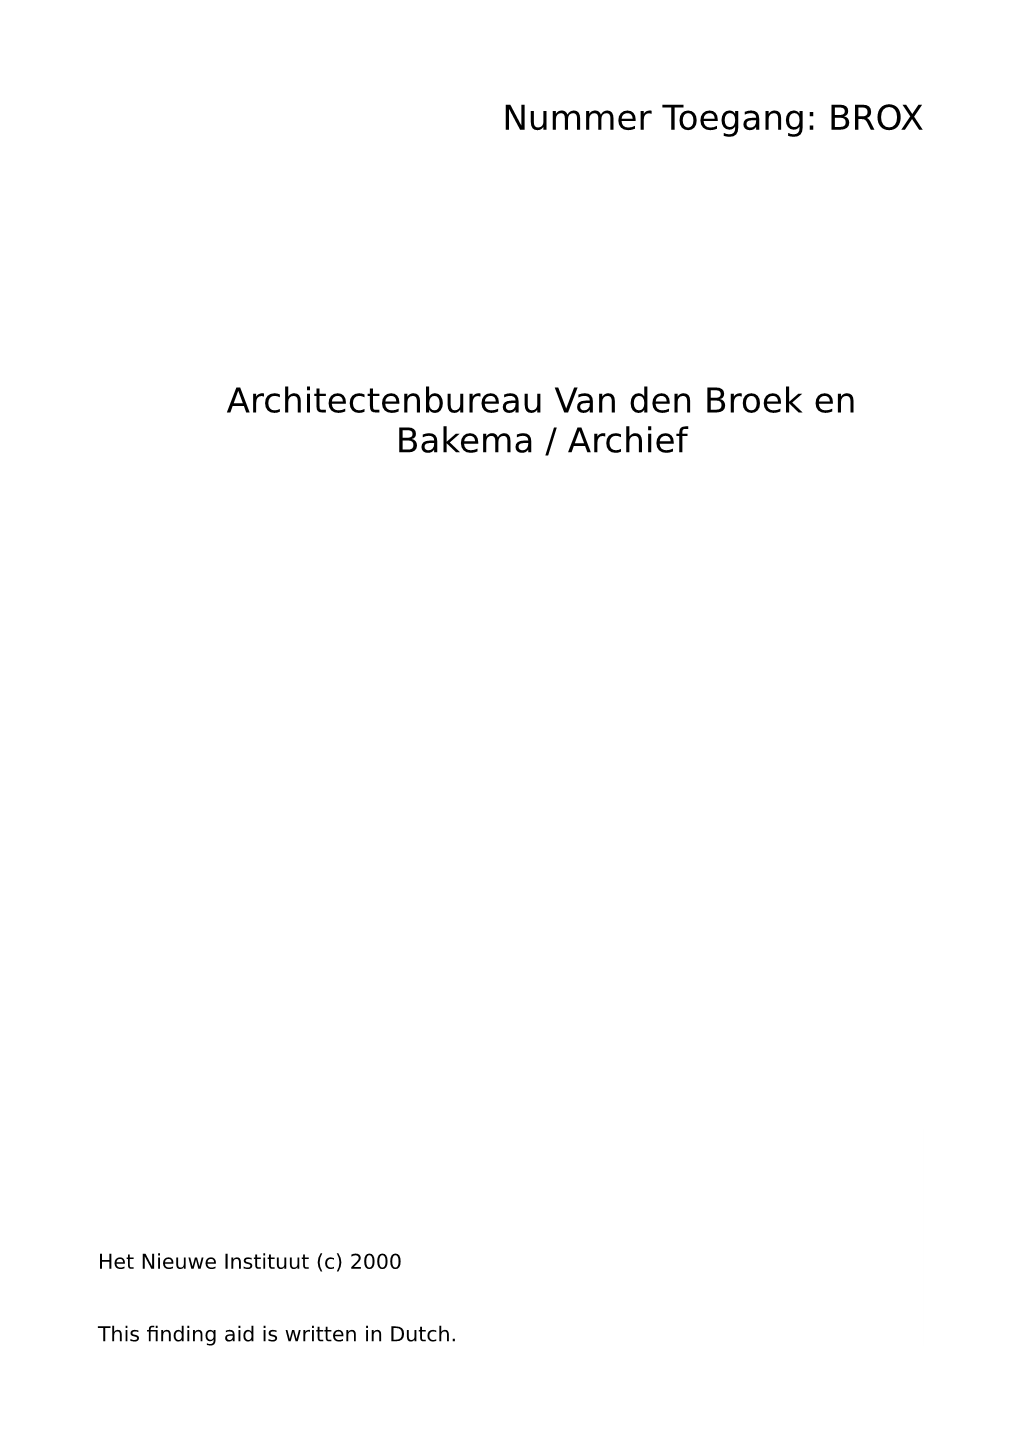 Architectenbureau Van Den Broek En Bakema / Archief